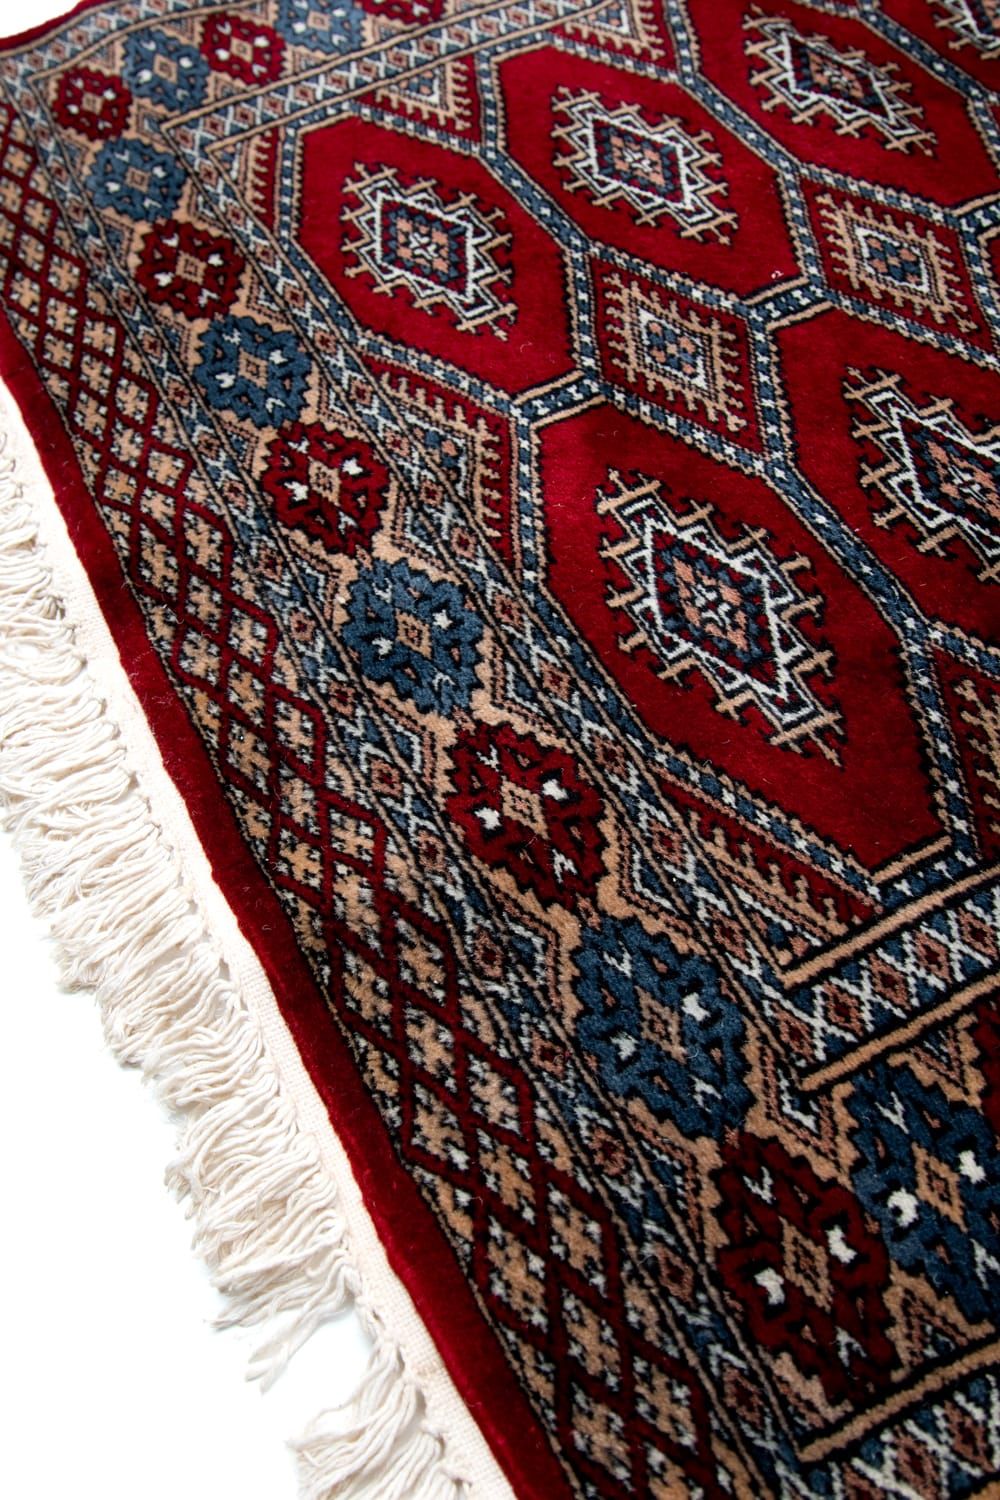 ザンスカール遊牧民の手織りのアンティック絨毯【たてｘよこ 約80cm x 